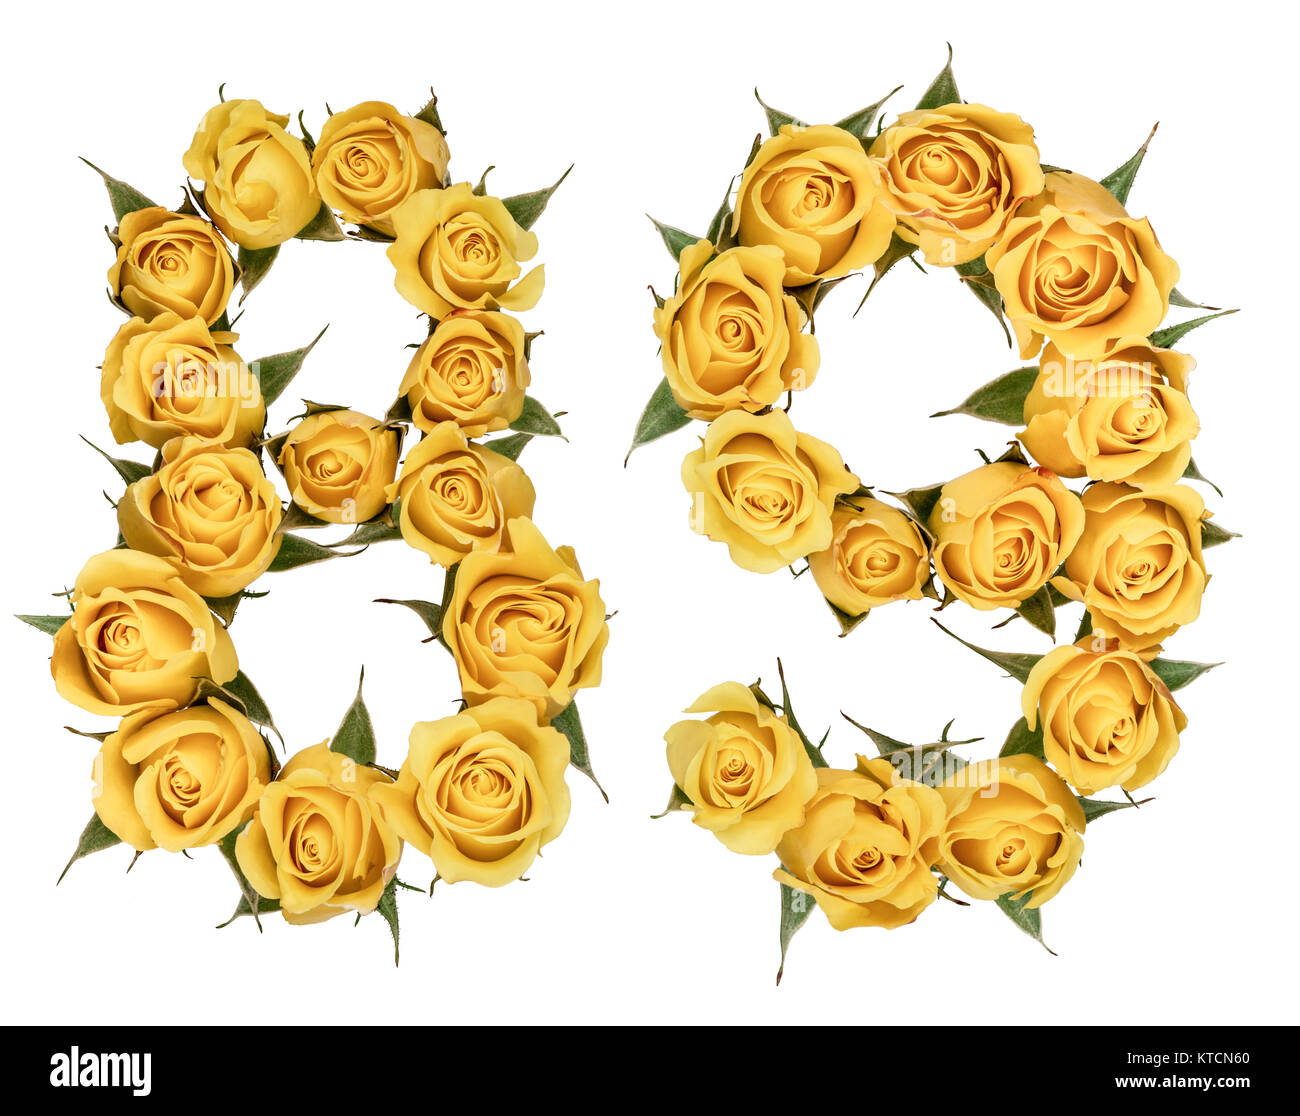 Boum 1 Mars 2023. Chiffre-arabe-89-quatre-vingt-neuf-de-fleurs-de-rose-jaune-isole-sur-fond-blanc-ktcn60